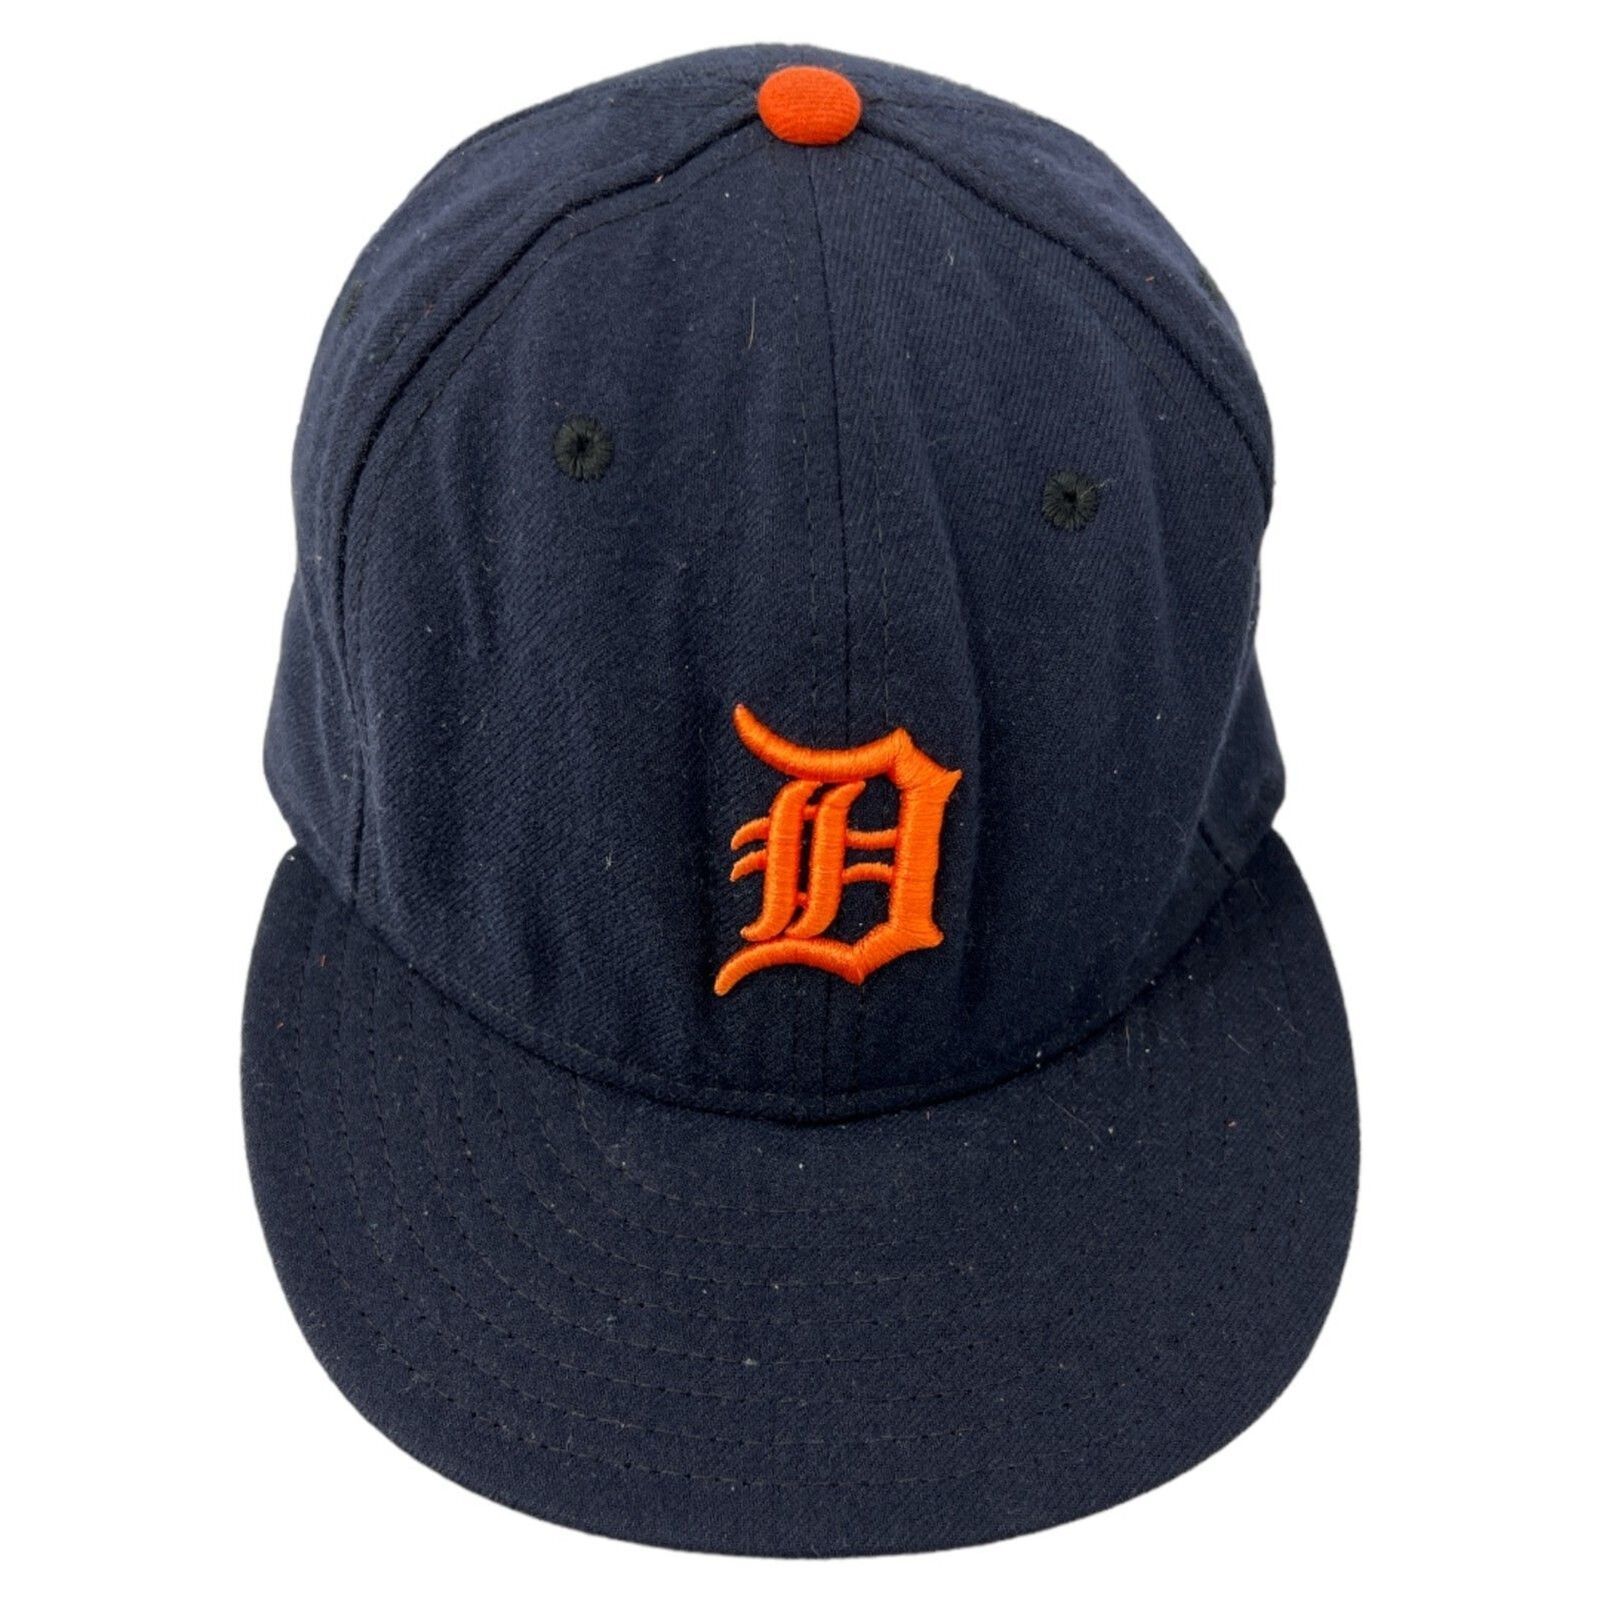 Detroit Tigers baseball Hat size 8 New Era 59fifty Navy MLB unisex cap - $31.68